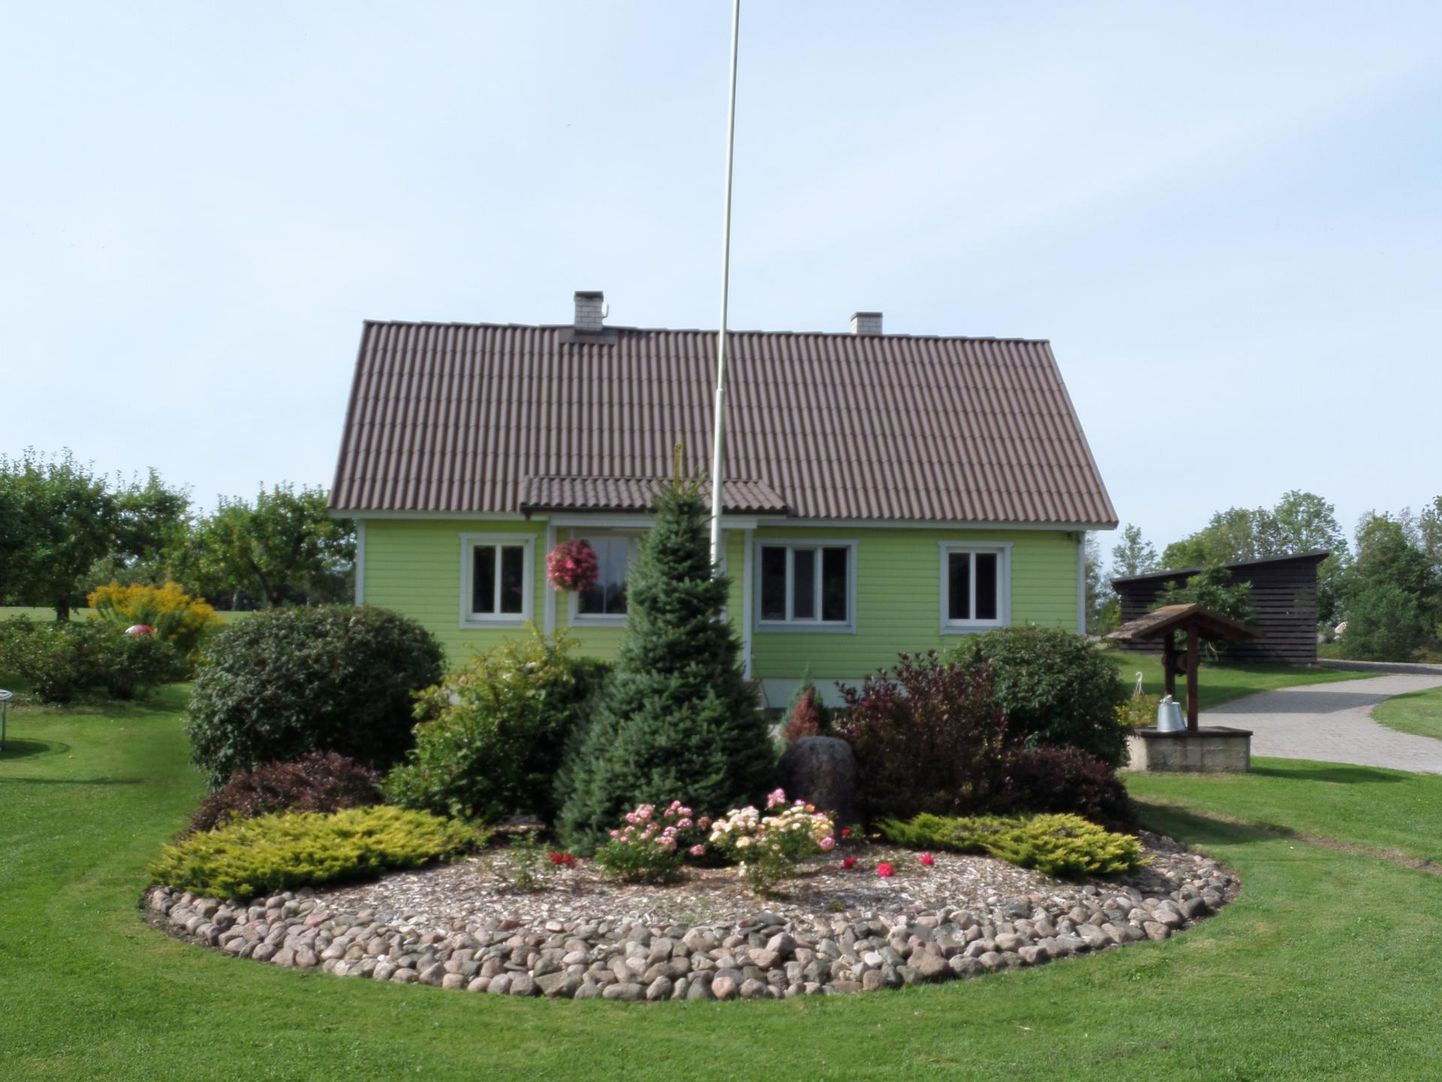 Põhja-Pärnumaa Kaunima maakodu 2019 tiitli pälvis Taimi Marksoni ja Sergei Kallo hooldatud Annuse talu Pitsalu külas.